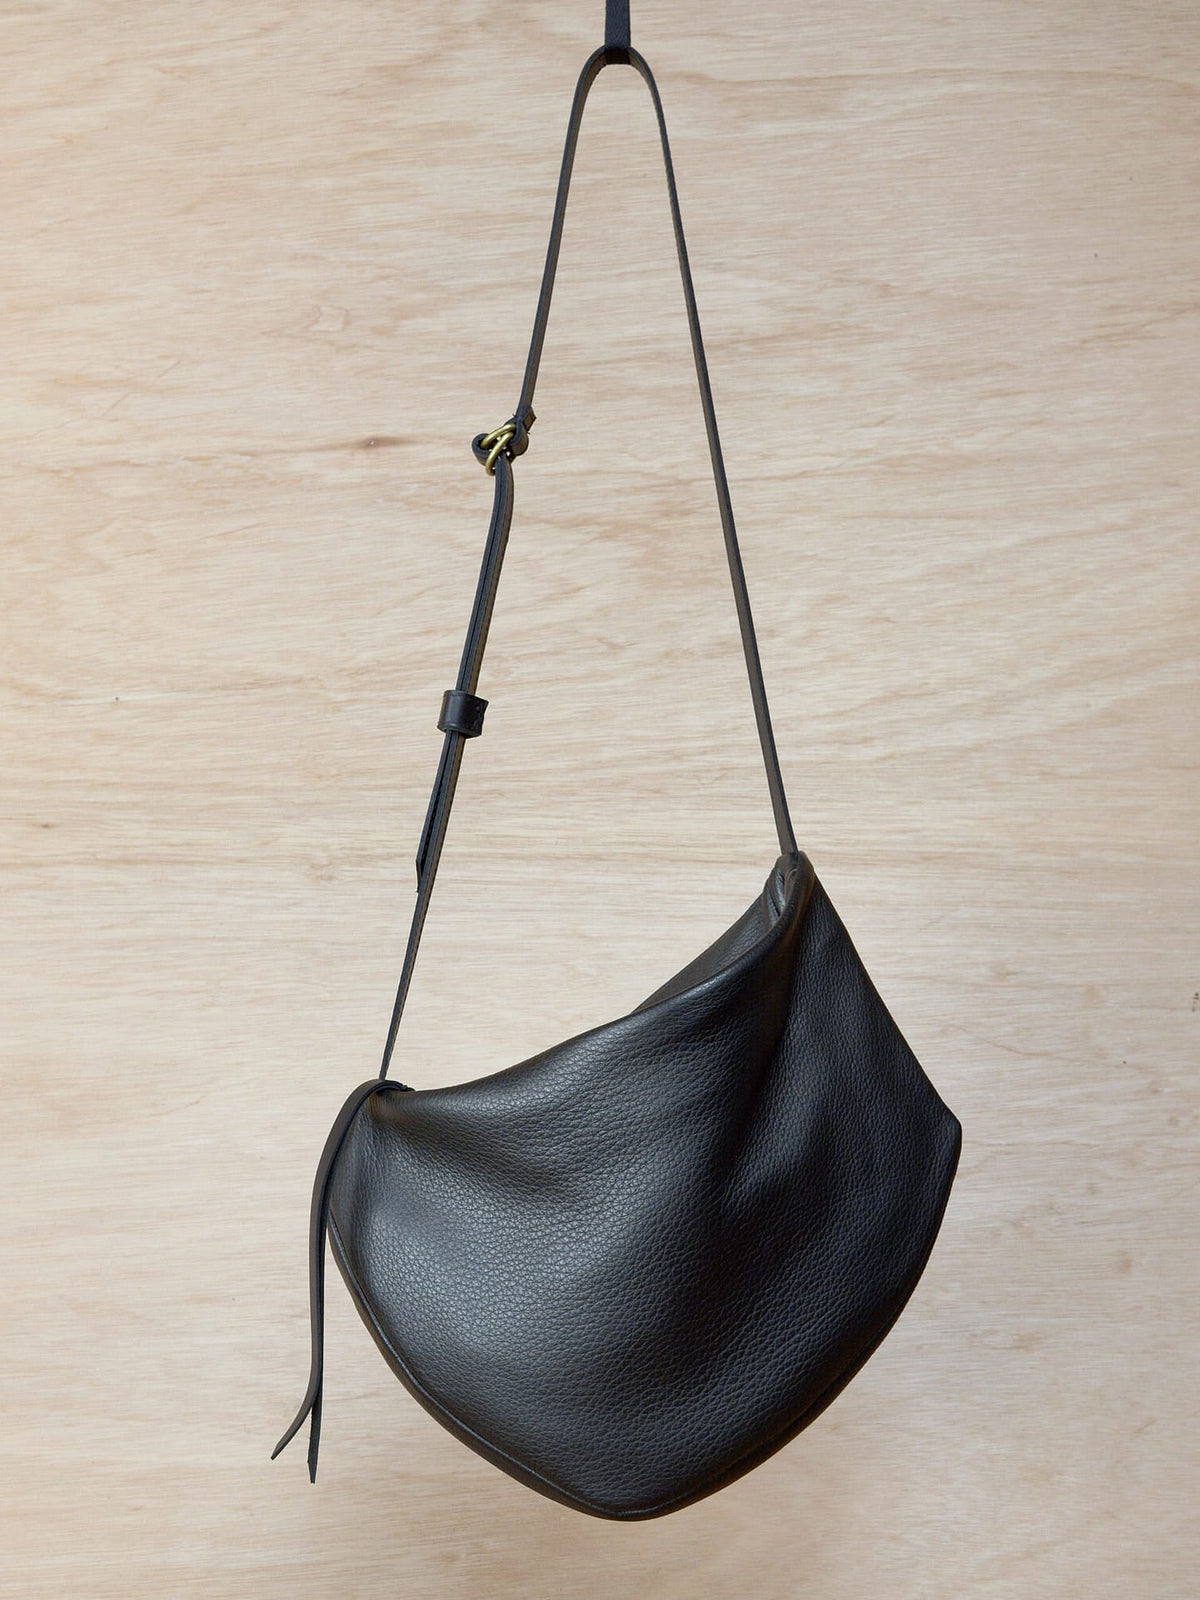 A Side Saddle black leather shoulder bag hanging on a wooden wall. Brand name: Kohl &amp; Co.